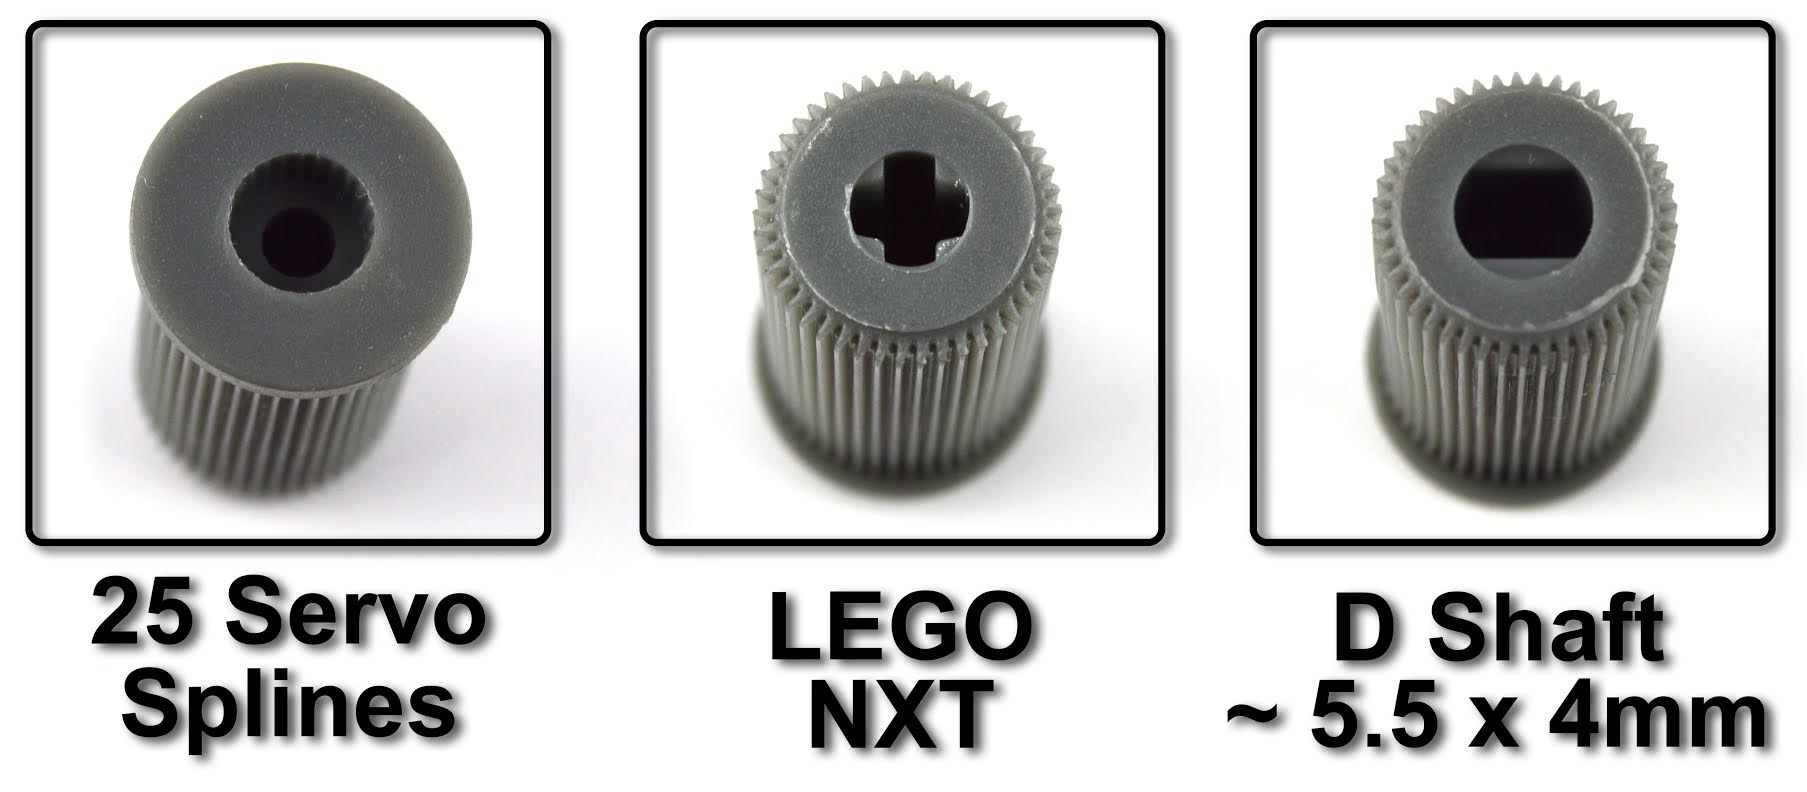 58mm Kunststoff Omnirad (kompatibel mit Servos und Lego Mindstorms NXT) - Zum Vergrößern klicken